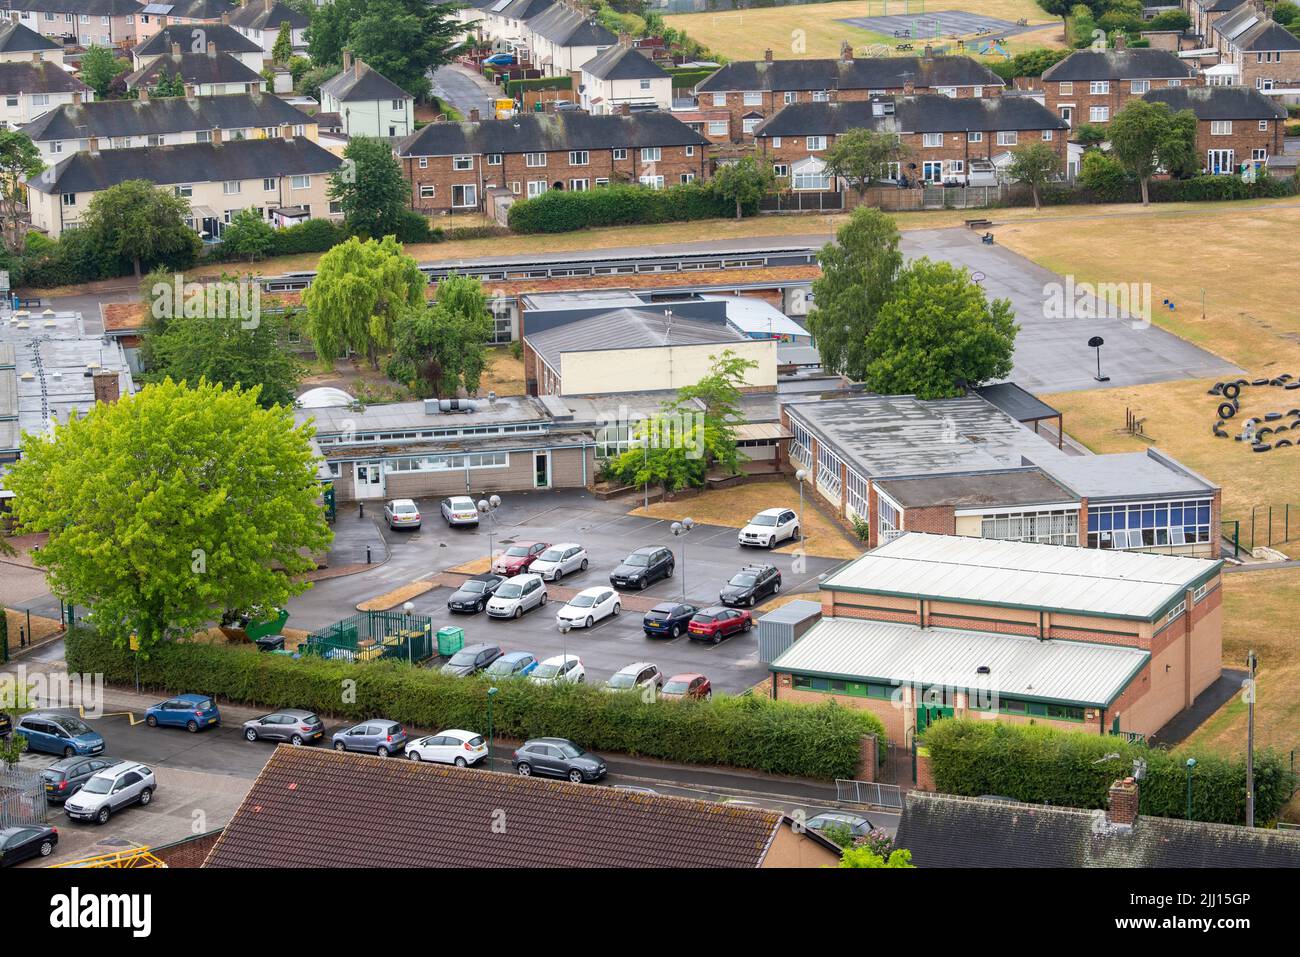 Imagen aérea de la escuela primaria Dovecote en Clifton capturada desde el tejado de Southchurch Court, Nottinghamshire, Inglaterra, Reino Unido Foto de stock